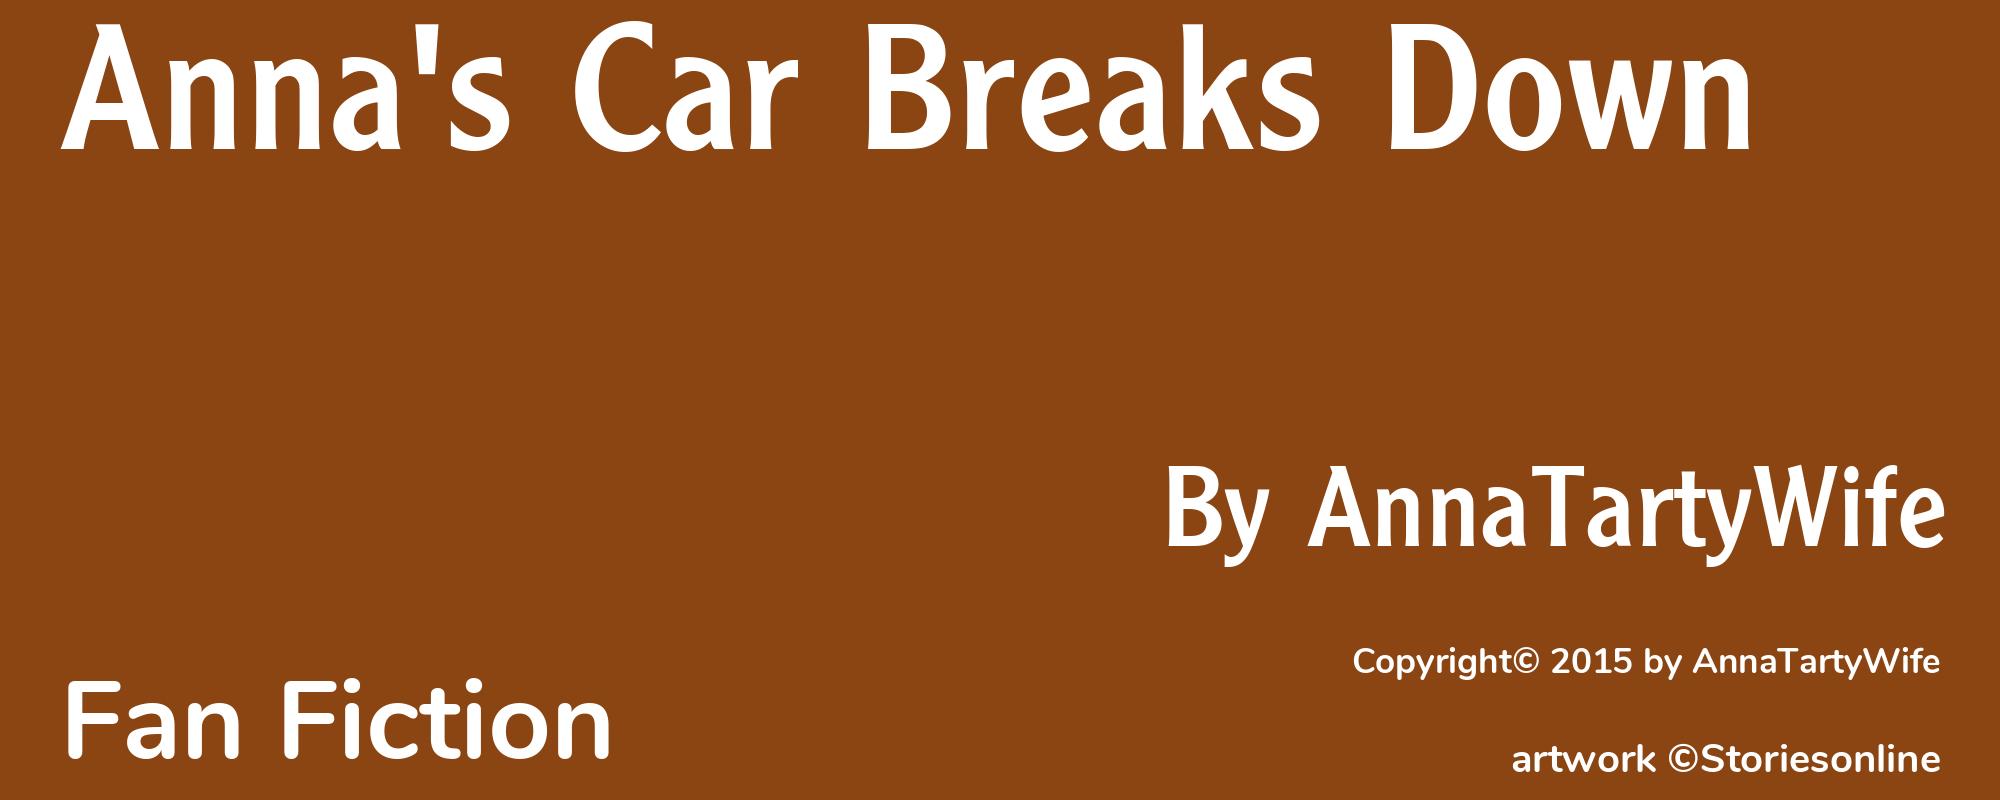 Anna's Car Breaks Down - Cover